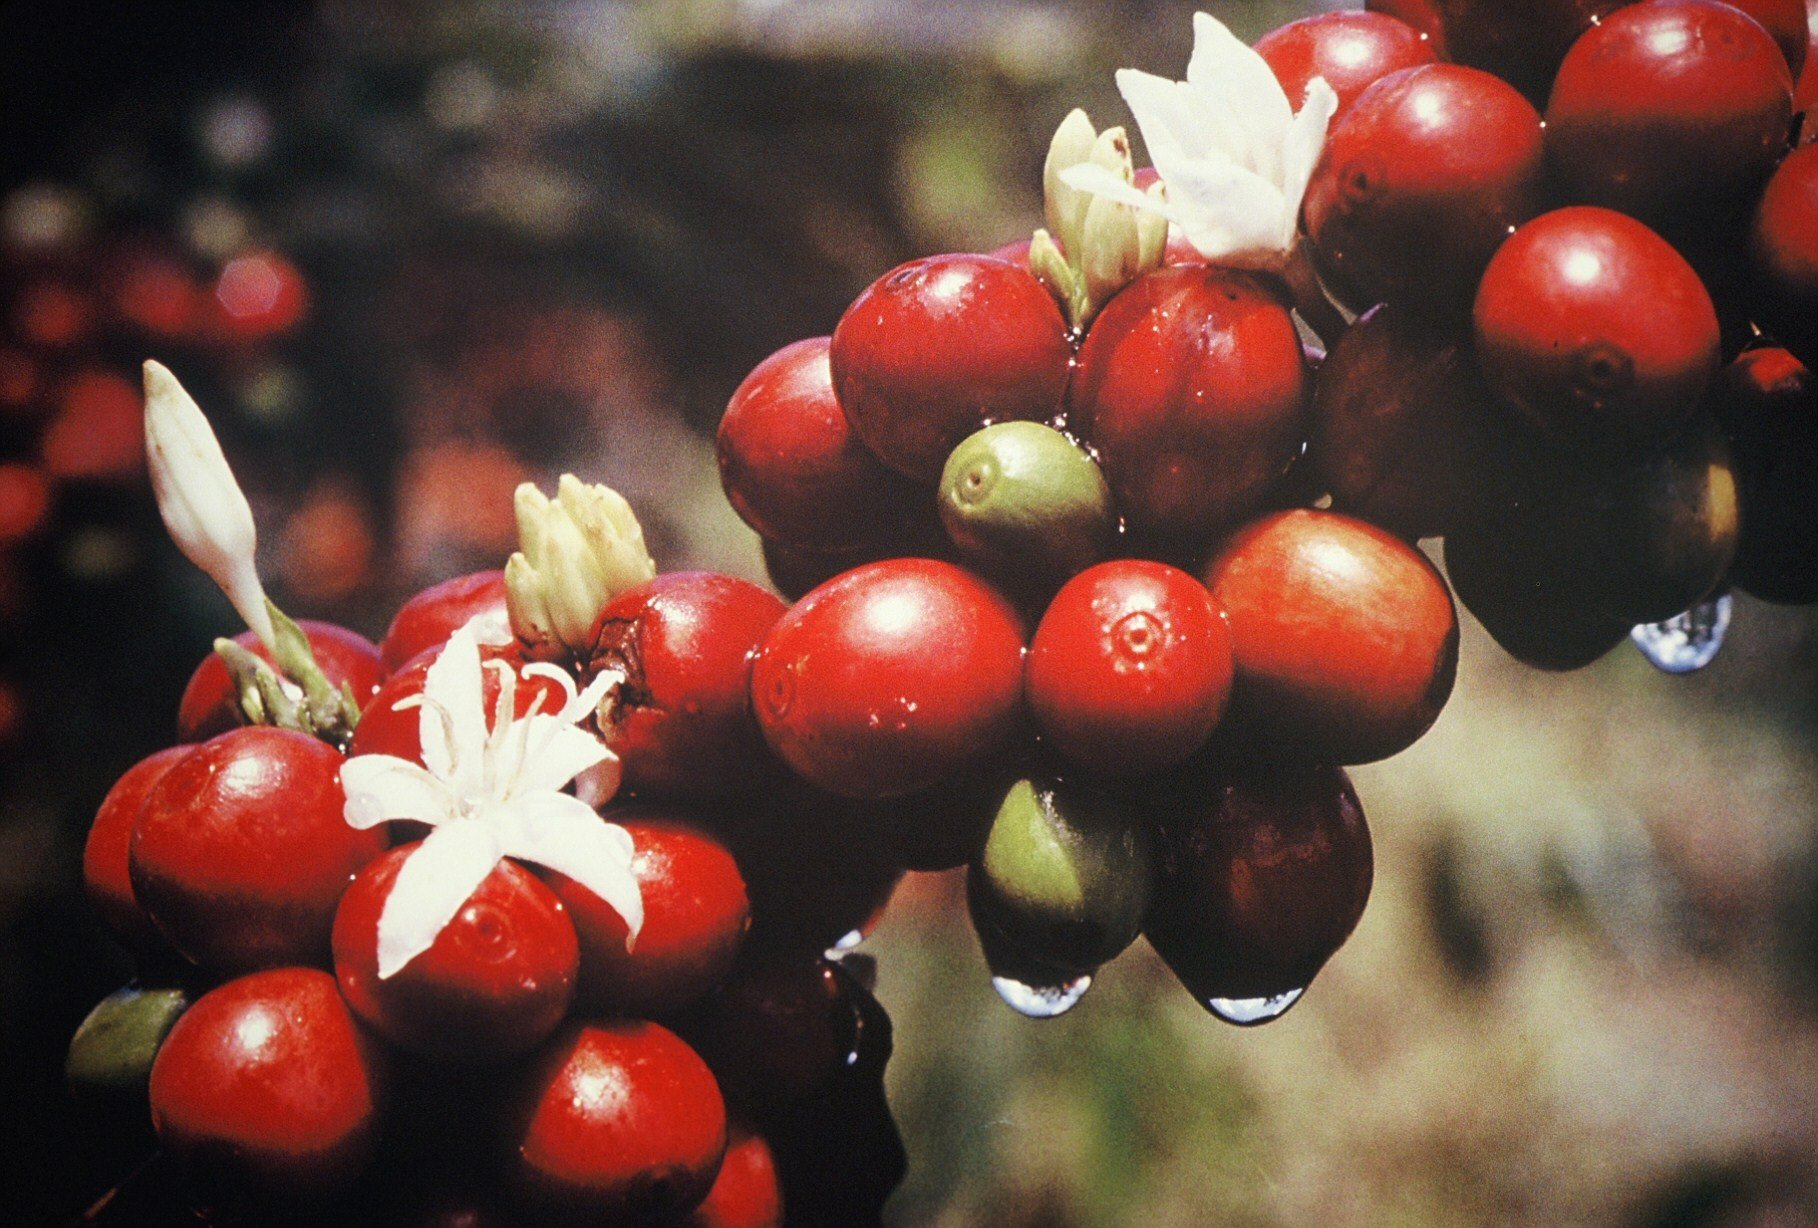 blog 3 growing coffee fruits.jpg